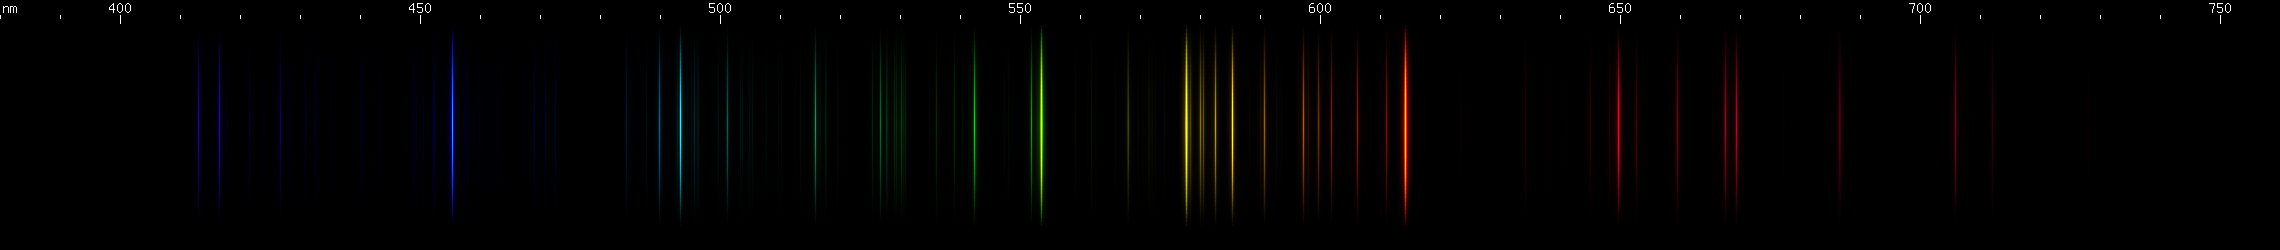 Spectral Lines of Barium